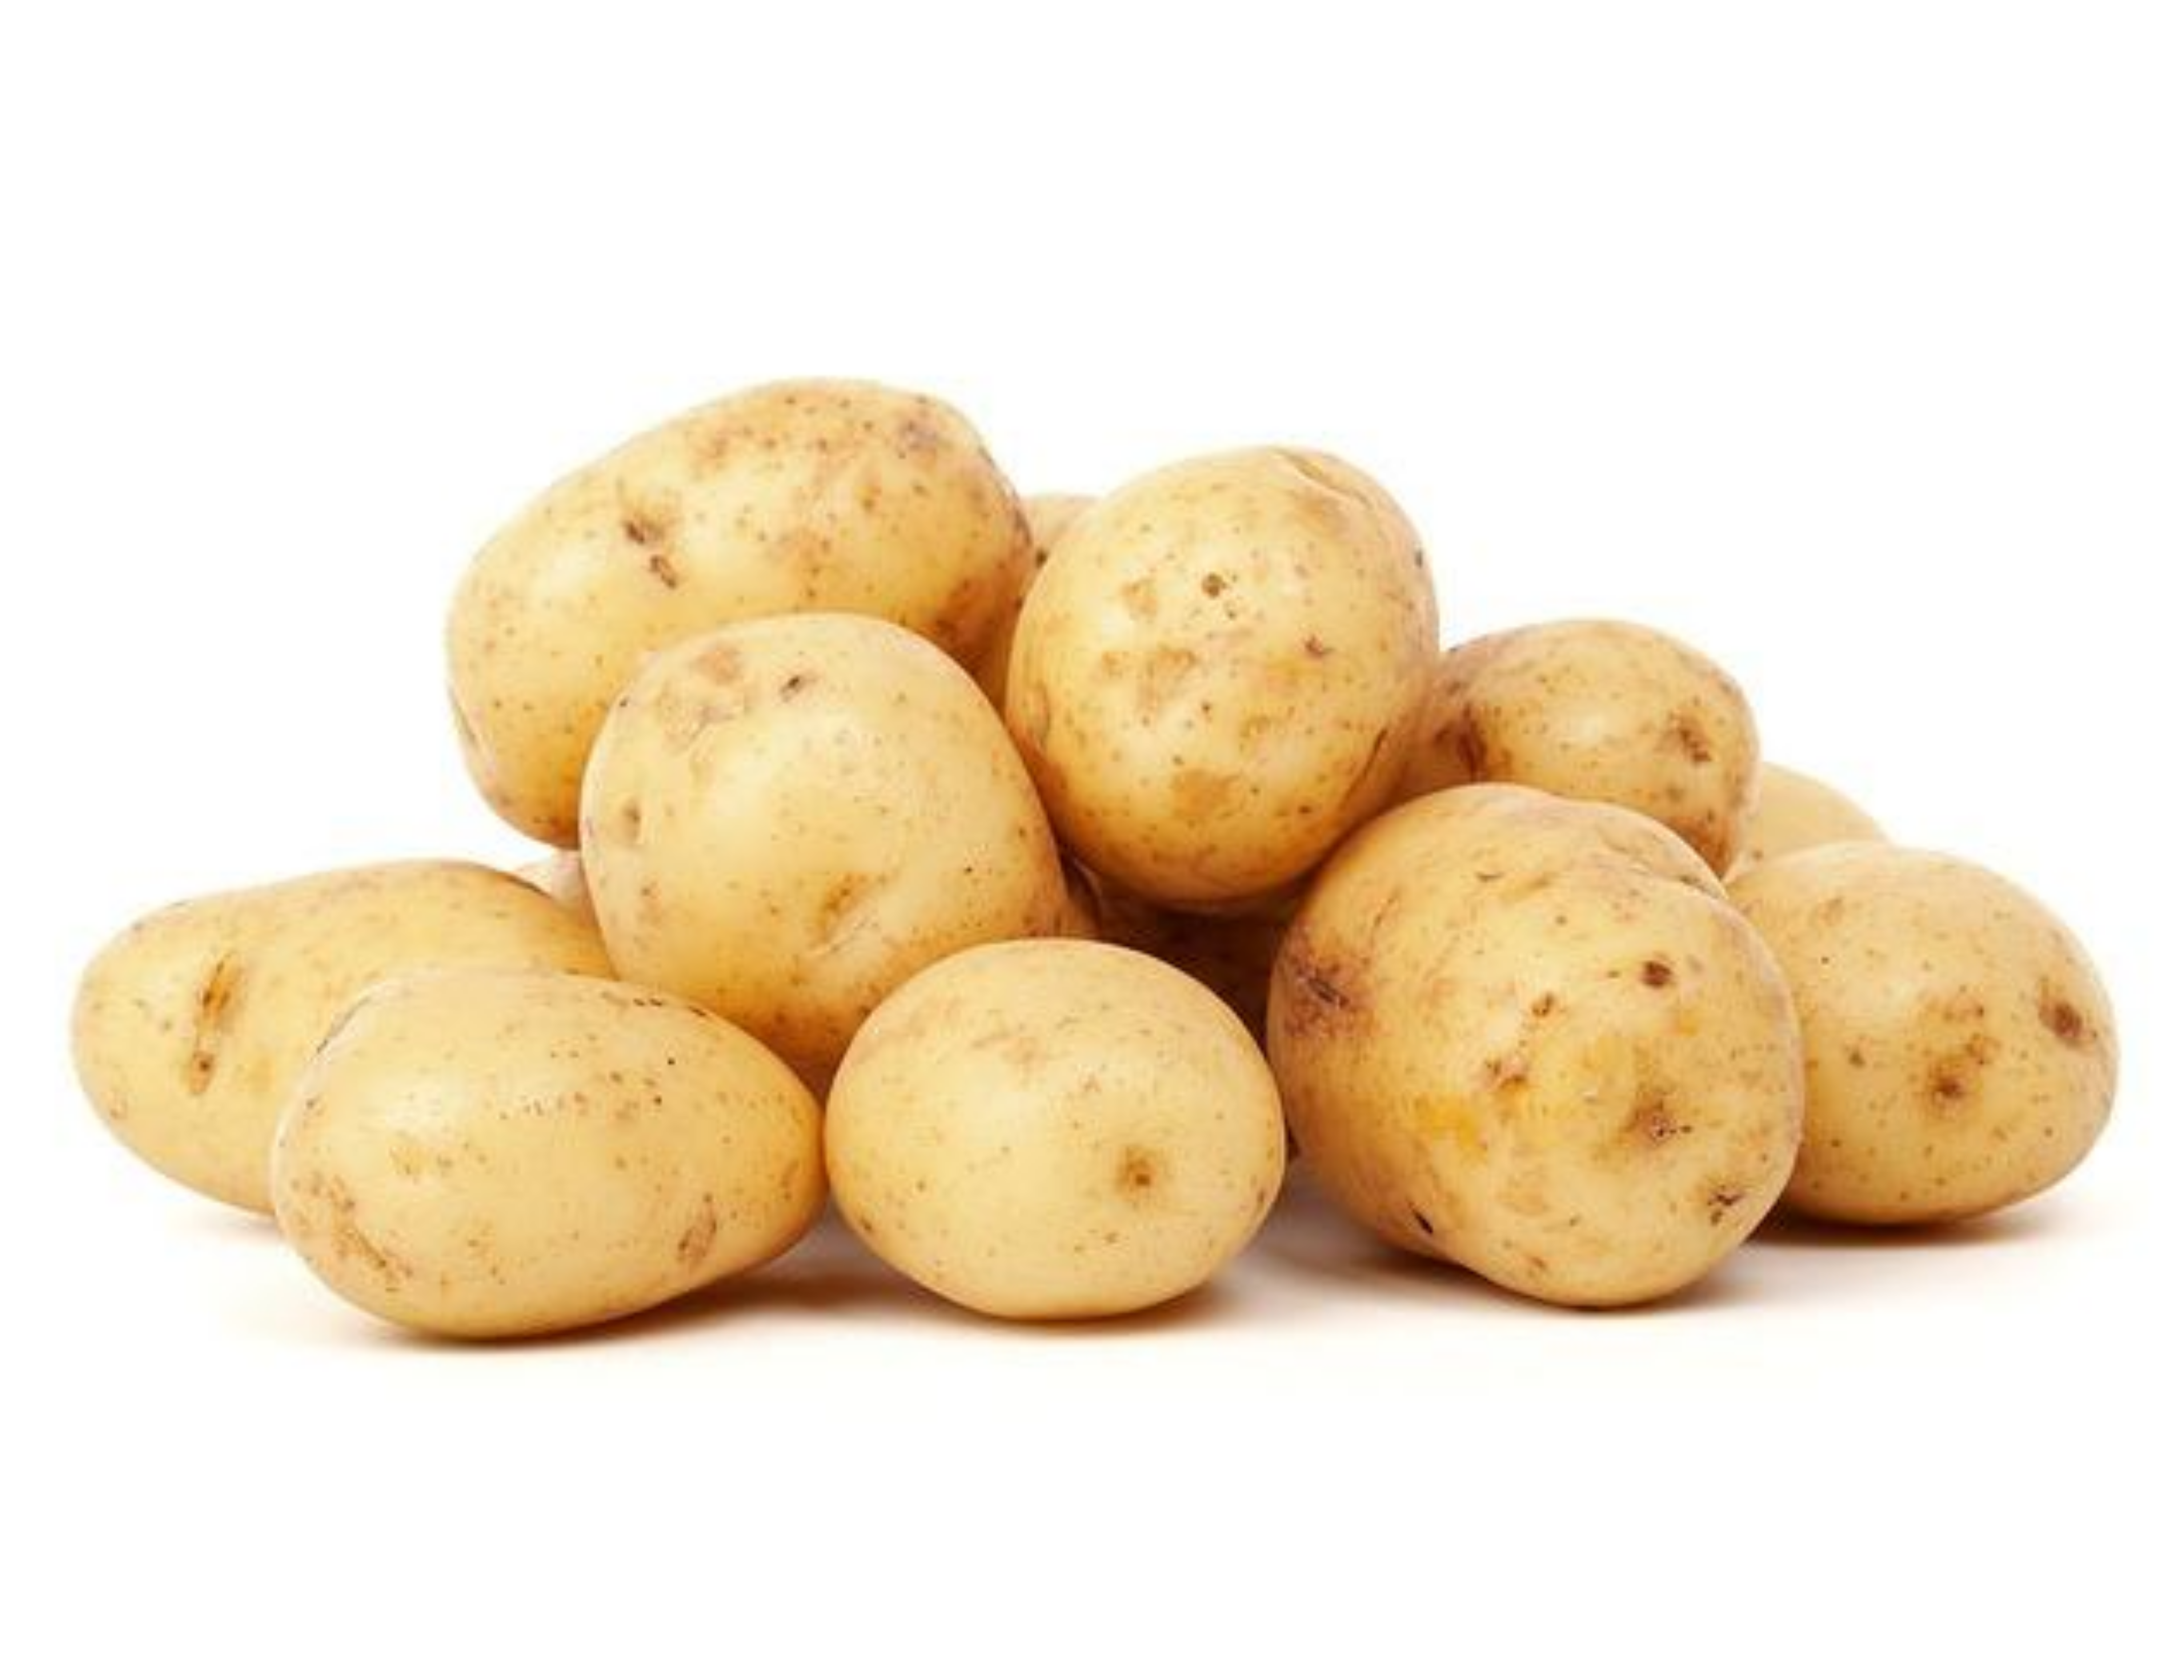 Potatoes picture. Картофель семенной Триумф. Картофель семенной Триумф элита. Сорт картофеля Триумф. Картофель белый.